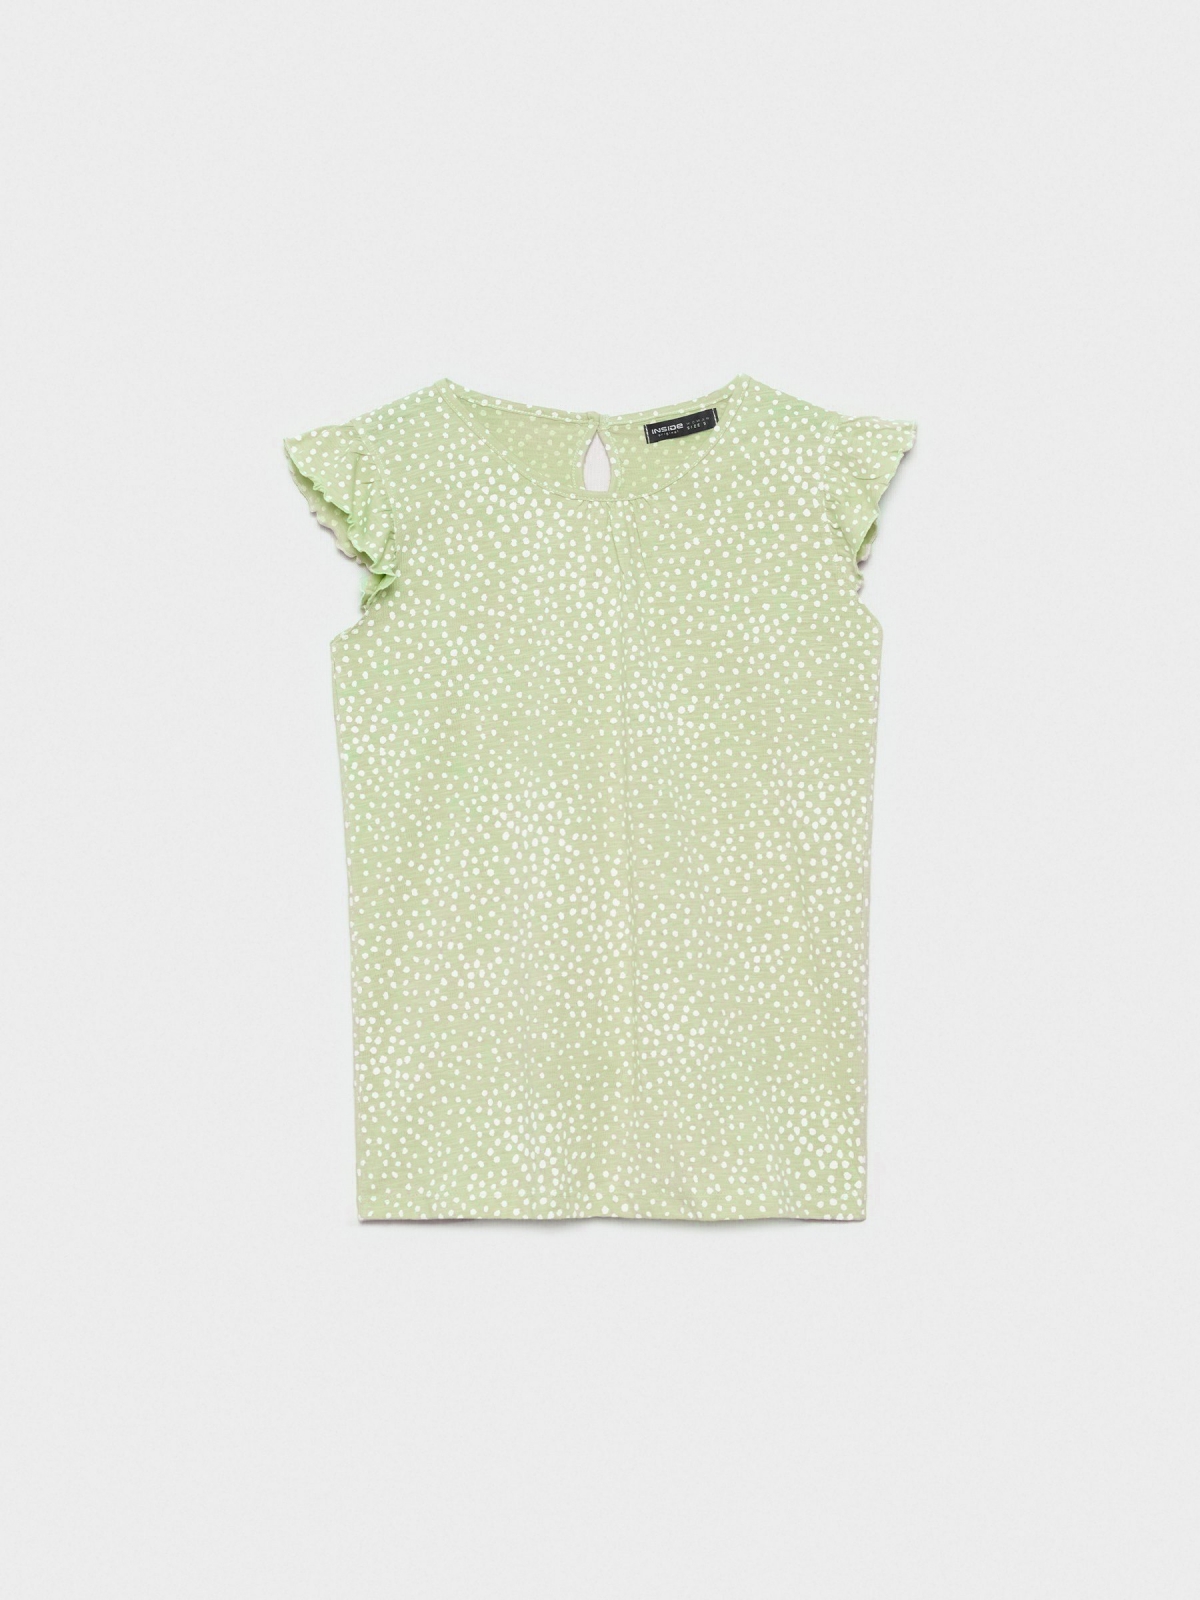  T-shirt de impressão Polka dot verde